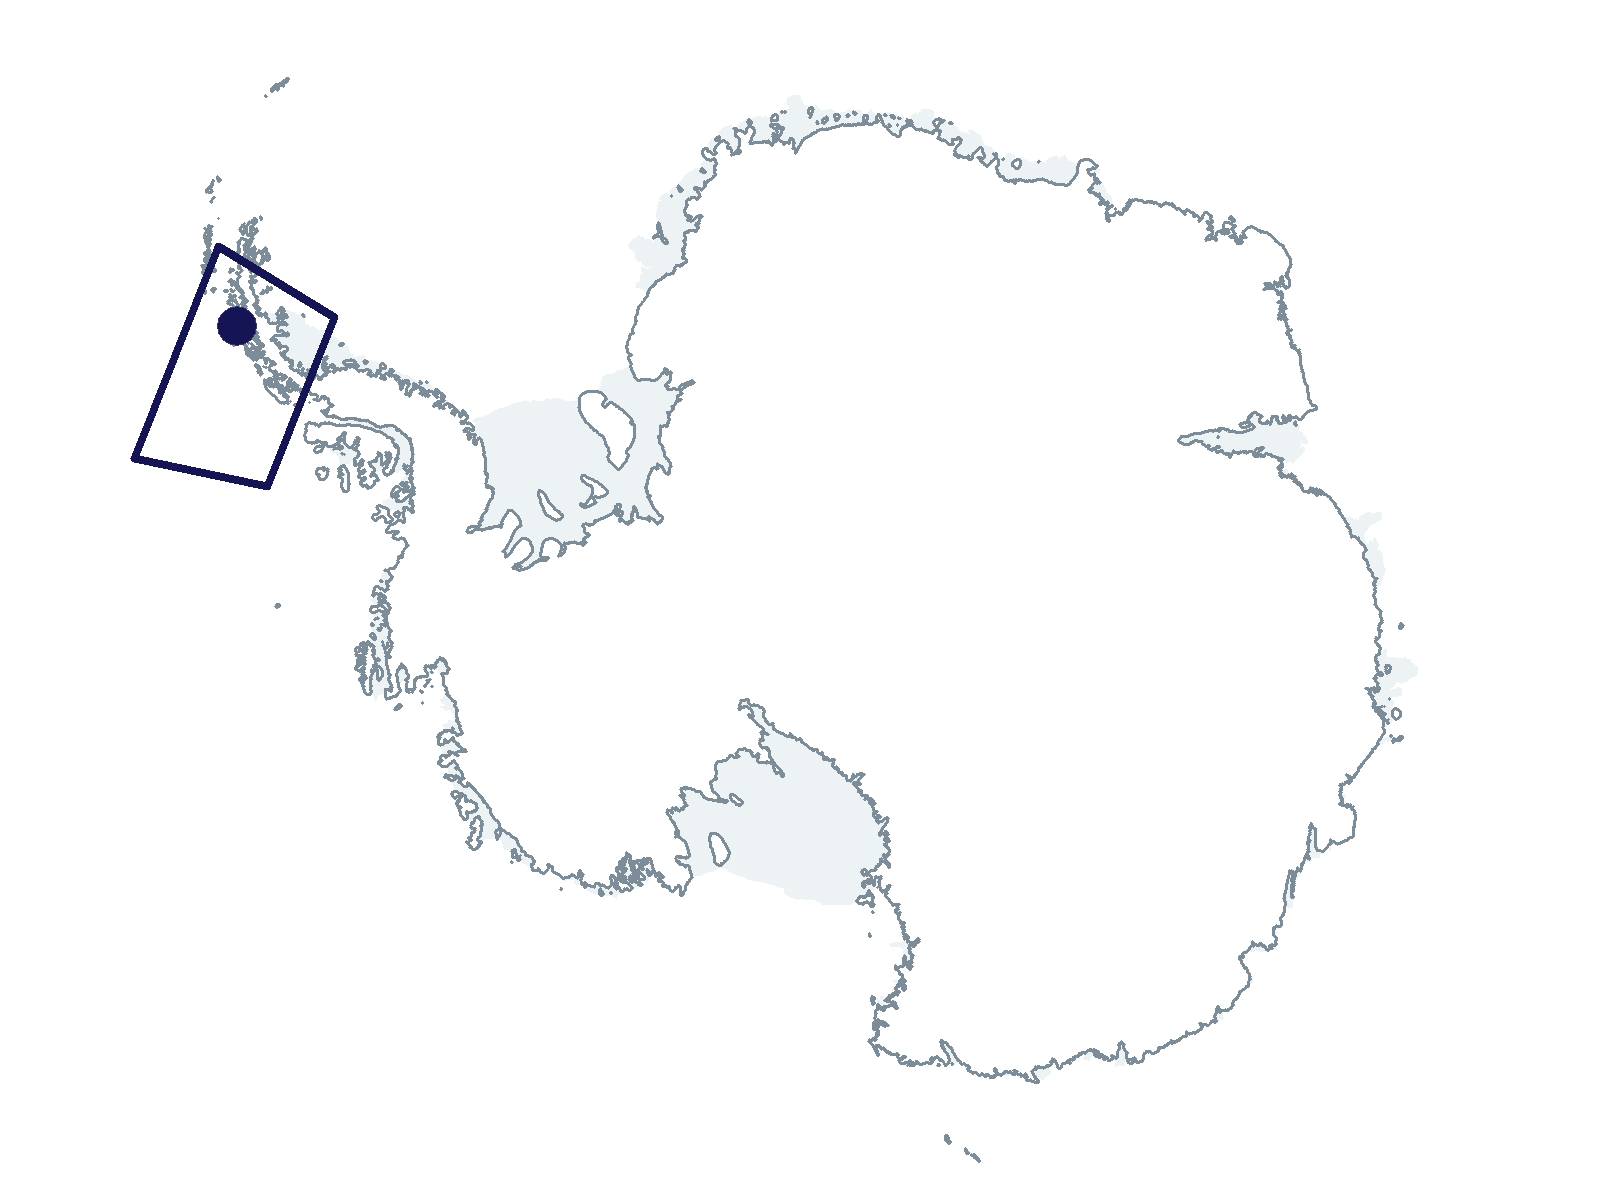 C-013-L/P Research Location(s): West Antarctic Peninsula